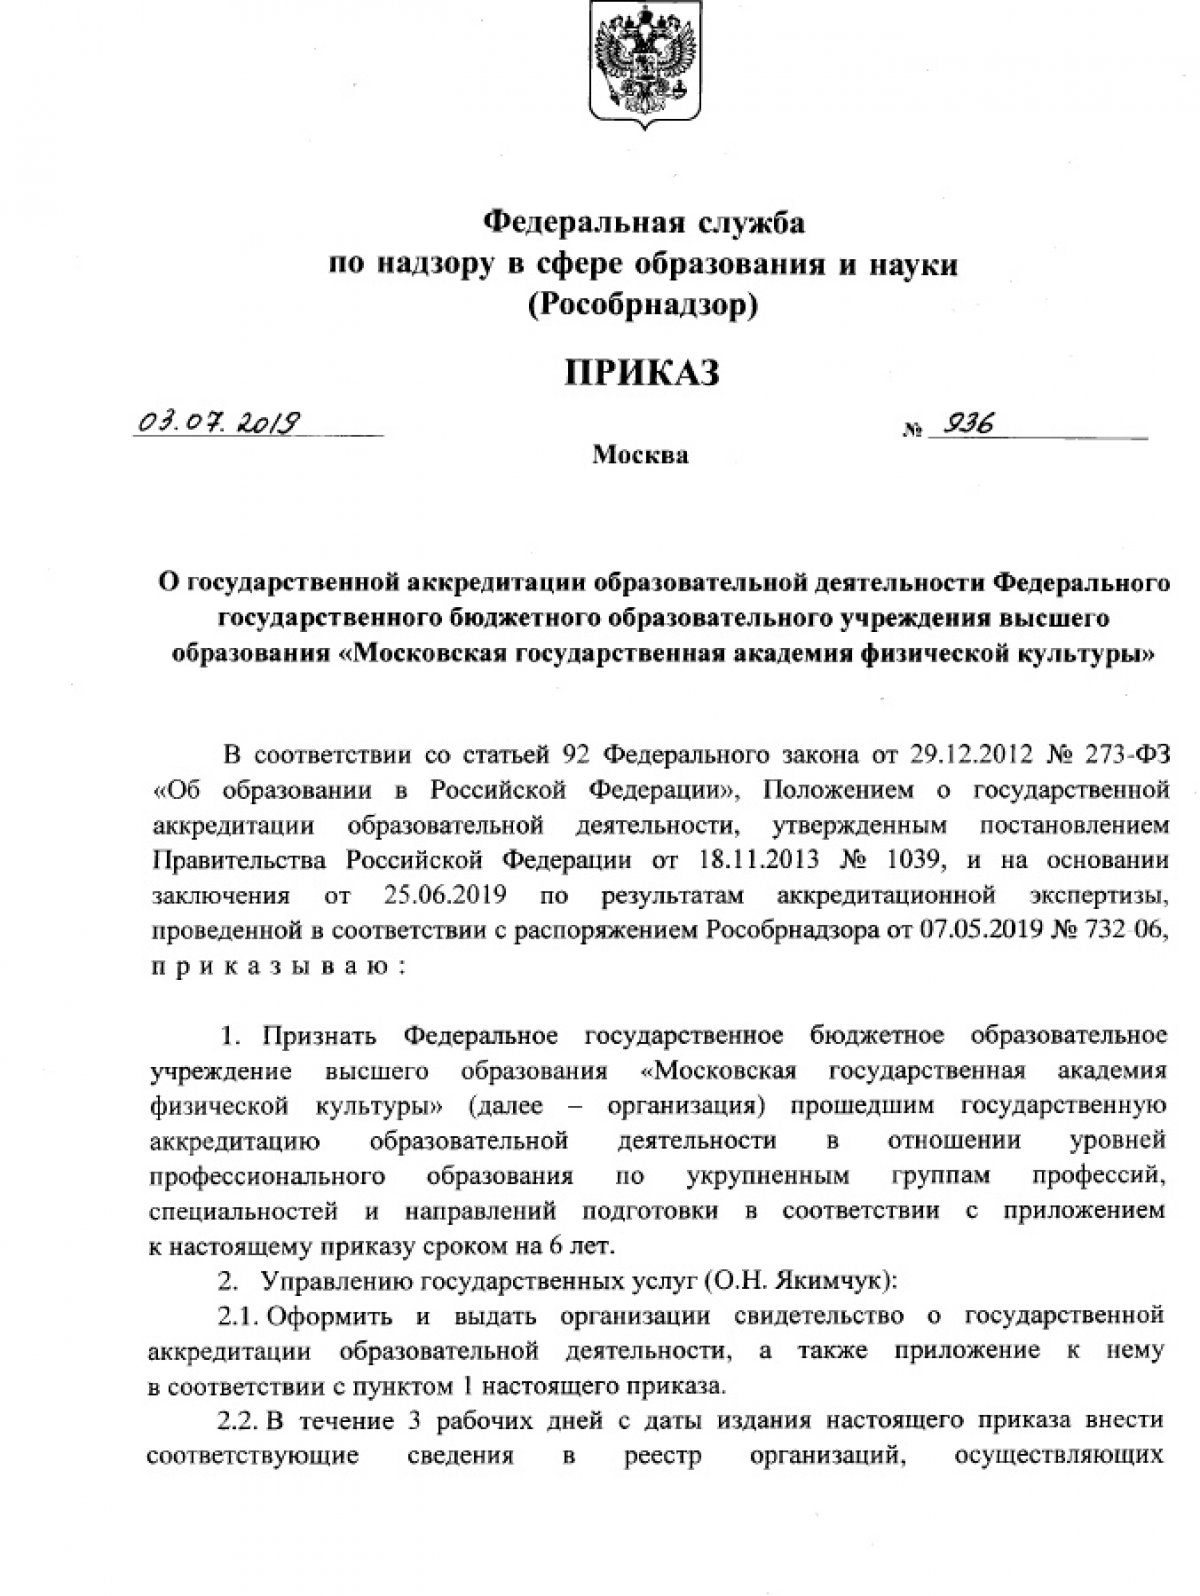 Приказом Федеральной службы по надзору в сфере образования и науки от 03.07.2019